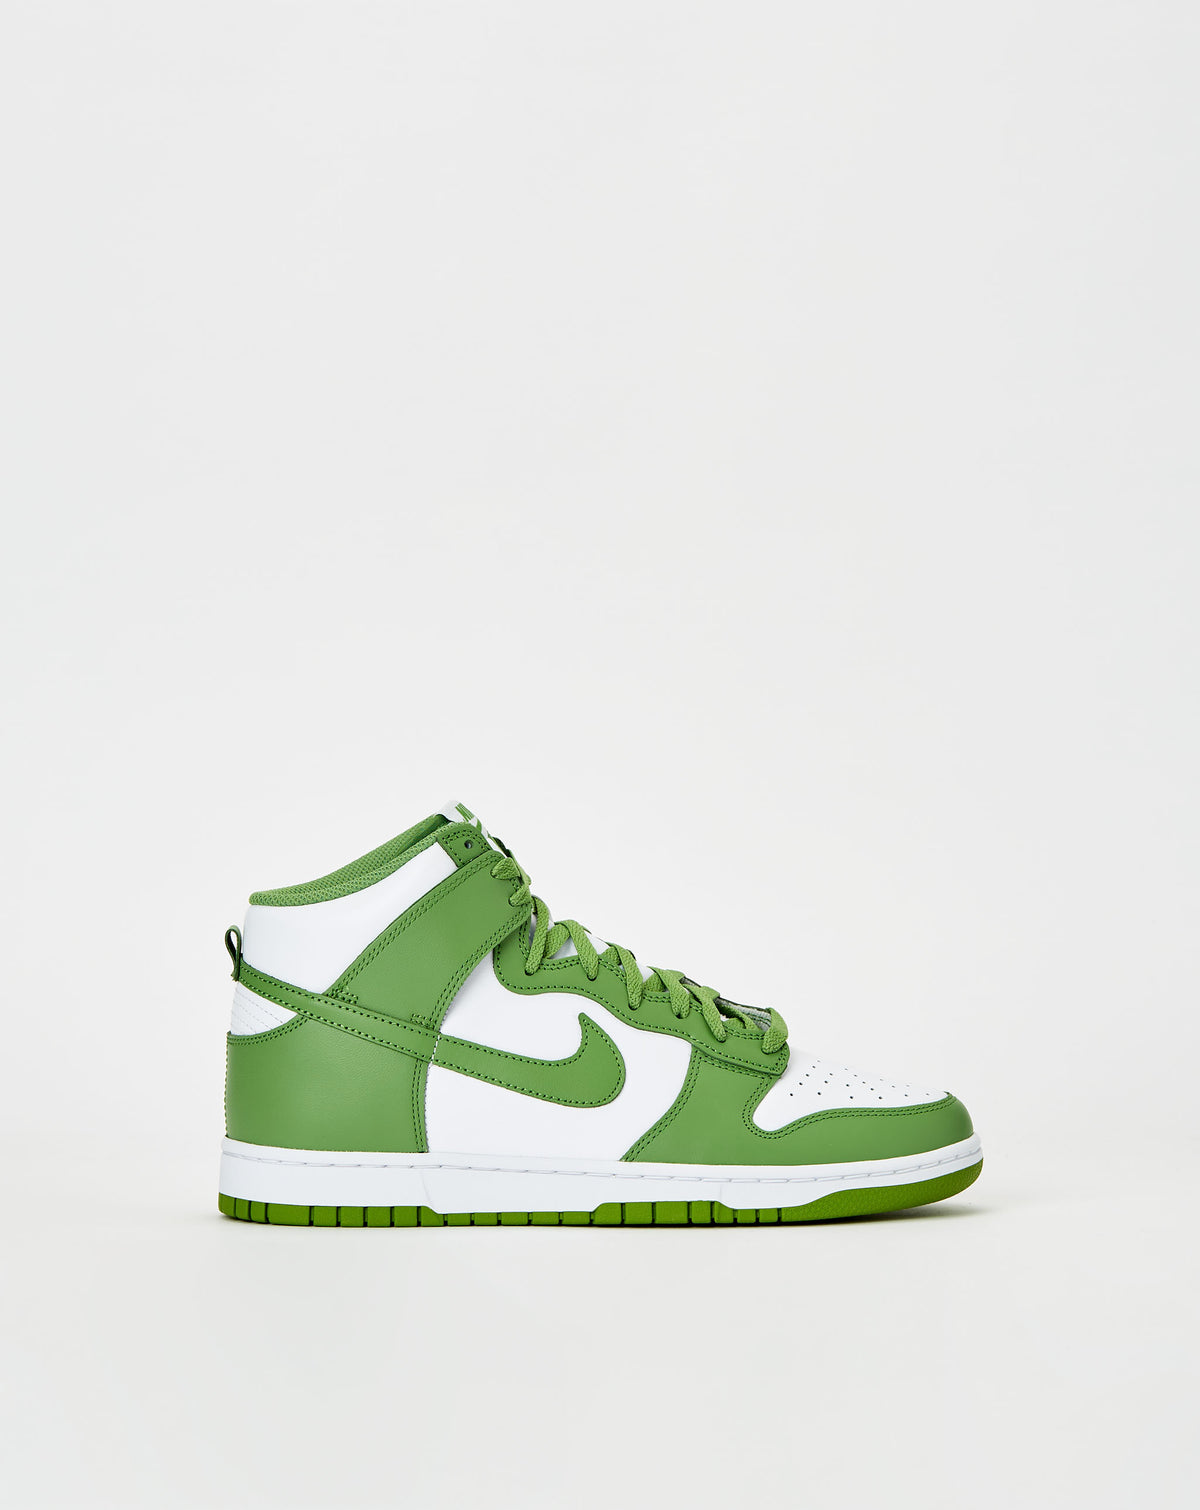 Nike Dunk High Retro 'Chlorophyll' - Rule of Next Footwear